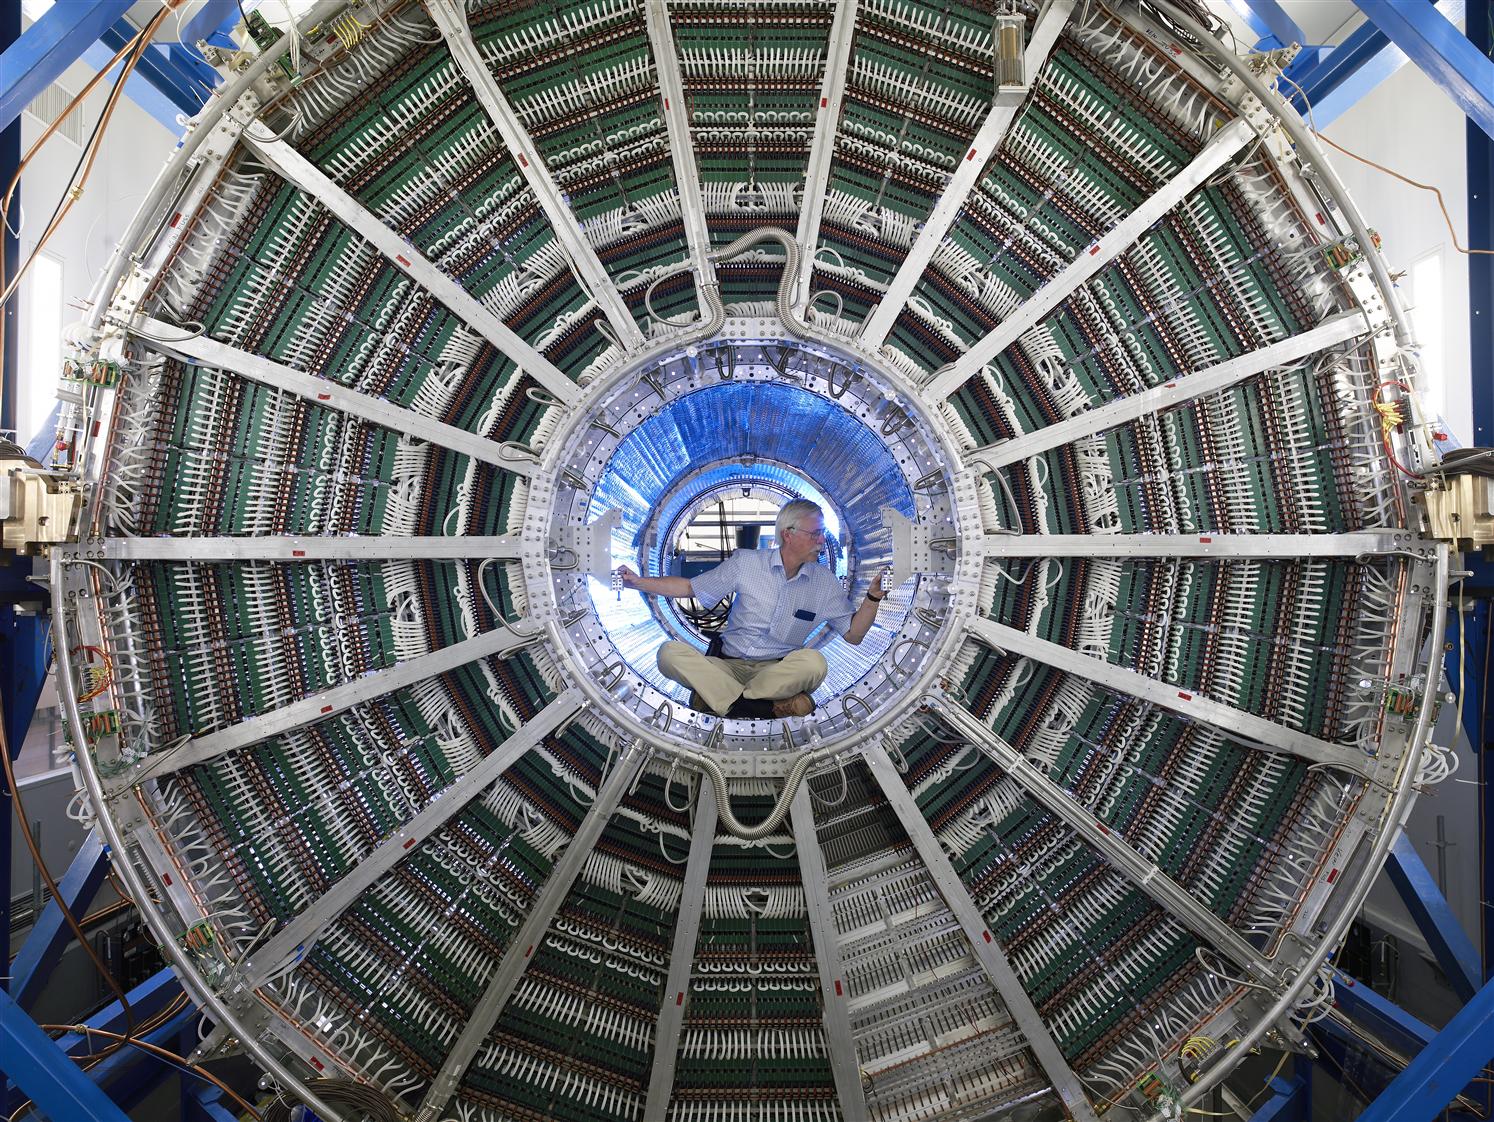 Un técnico analiza el interior de uno de los detectores del LHC en una imagen de archivo.